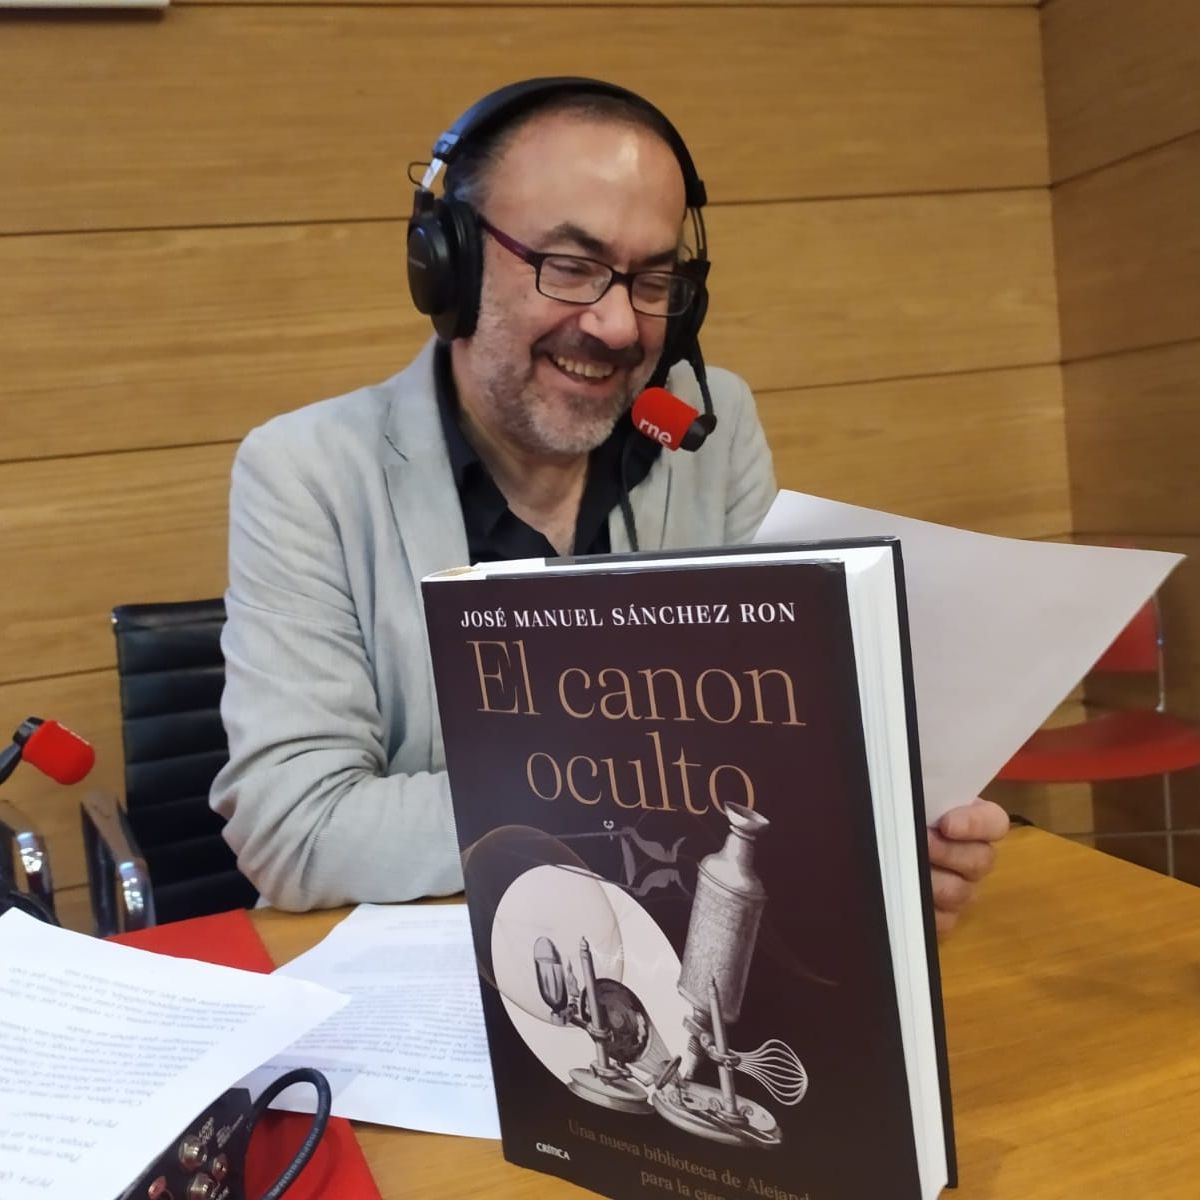 No es un día cualquiera - Un libro bajo el brazo: "El canon oculto" de José Manuel Sánchez Ron